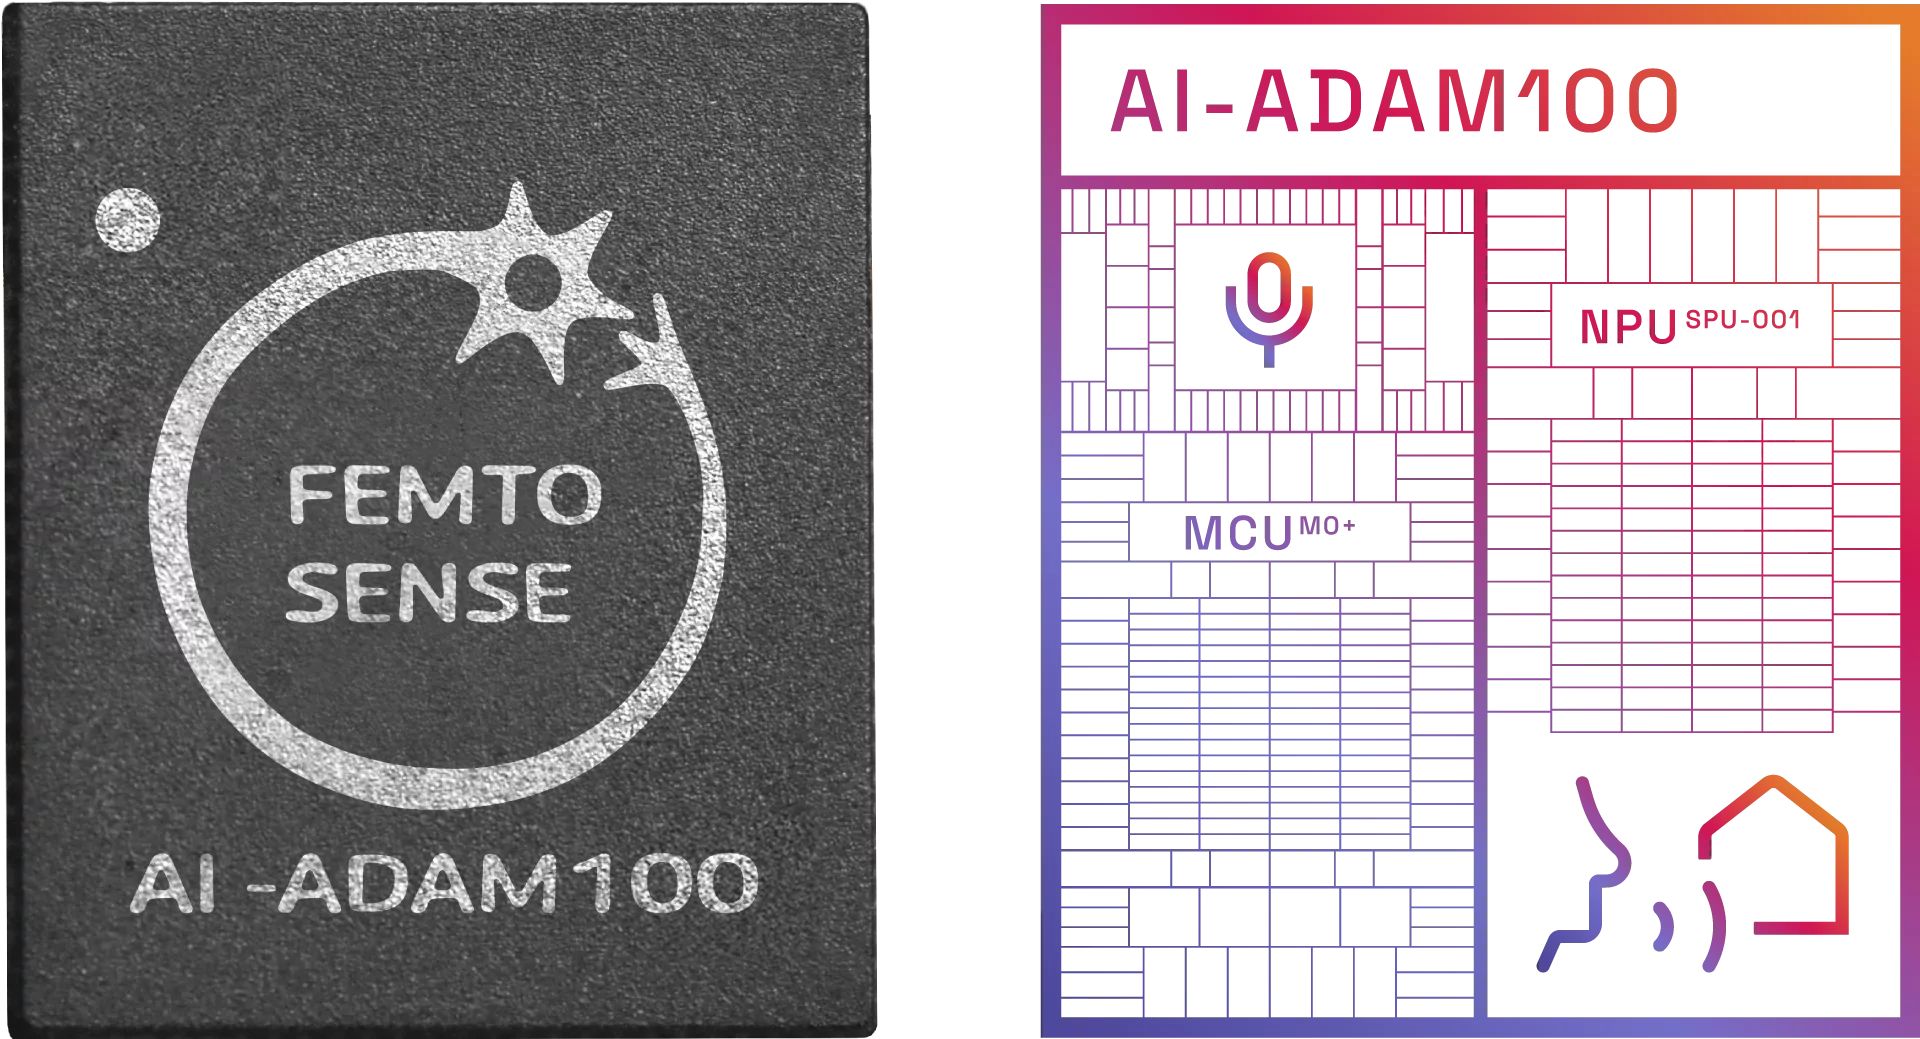 Femtosense AI-ADAM-100